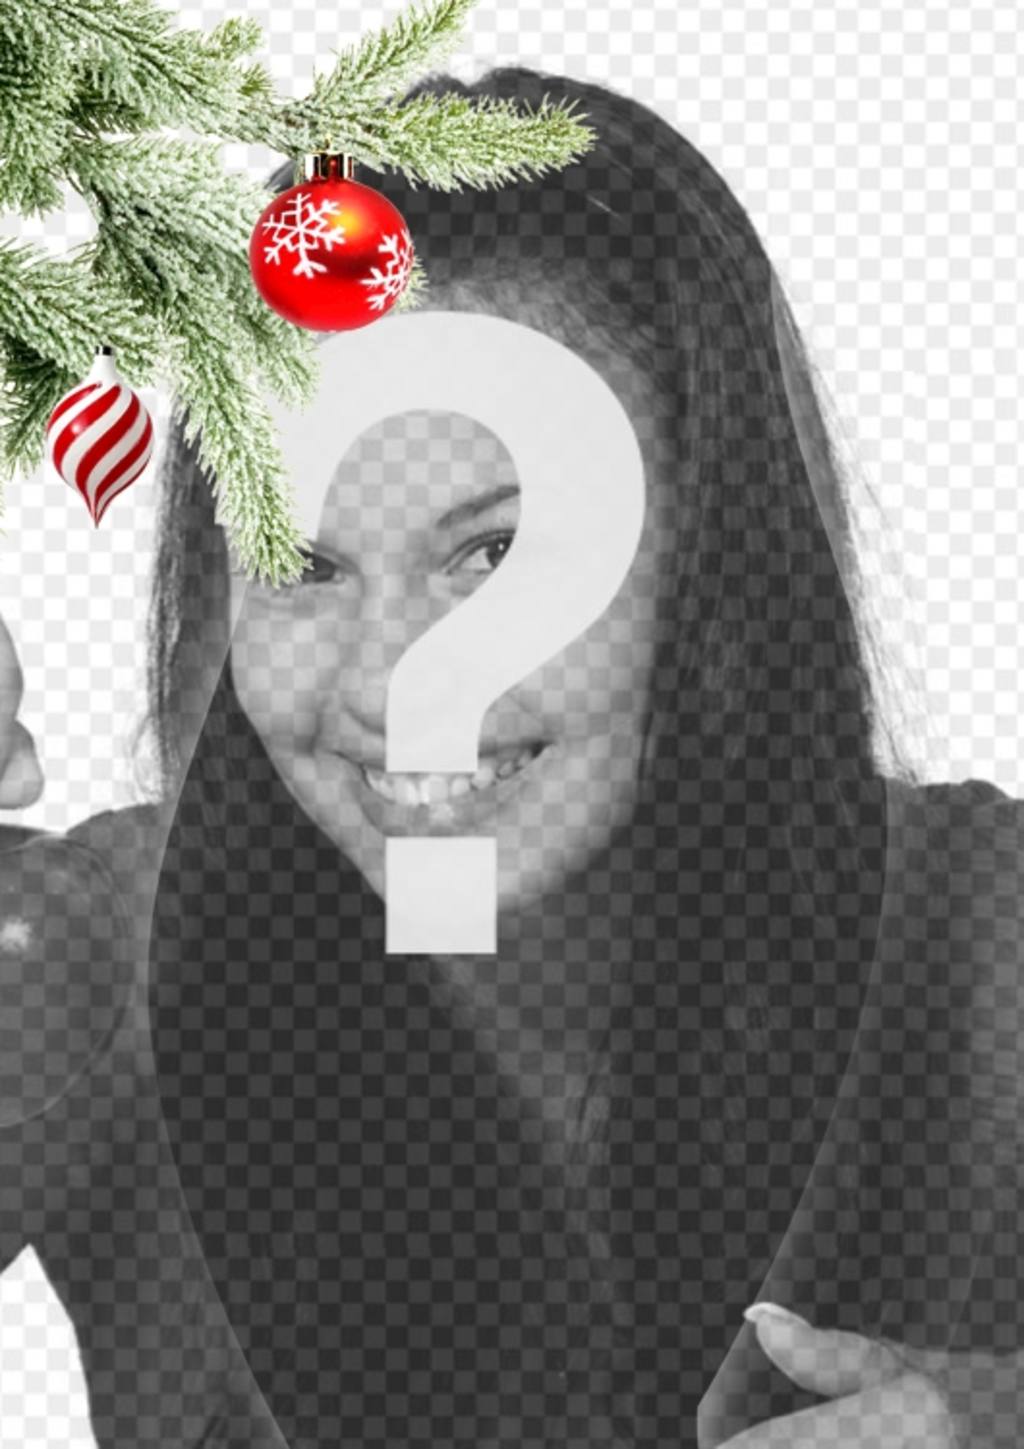 Cartão postal / Natal moldura onde você coloca uma imagem. Efeito de curvas melhoradas no fundo preto. Em primeiro plano, vemos um ramo da árvore de Natal pendurado com duas bolas, um na forma de sorvete ou tornado, é espirais brancos e vermelhos, é esférica e termina num..